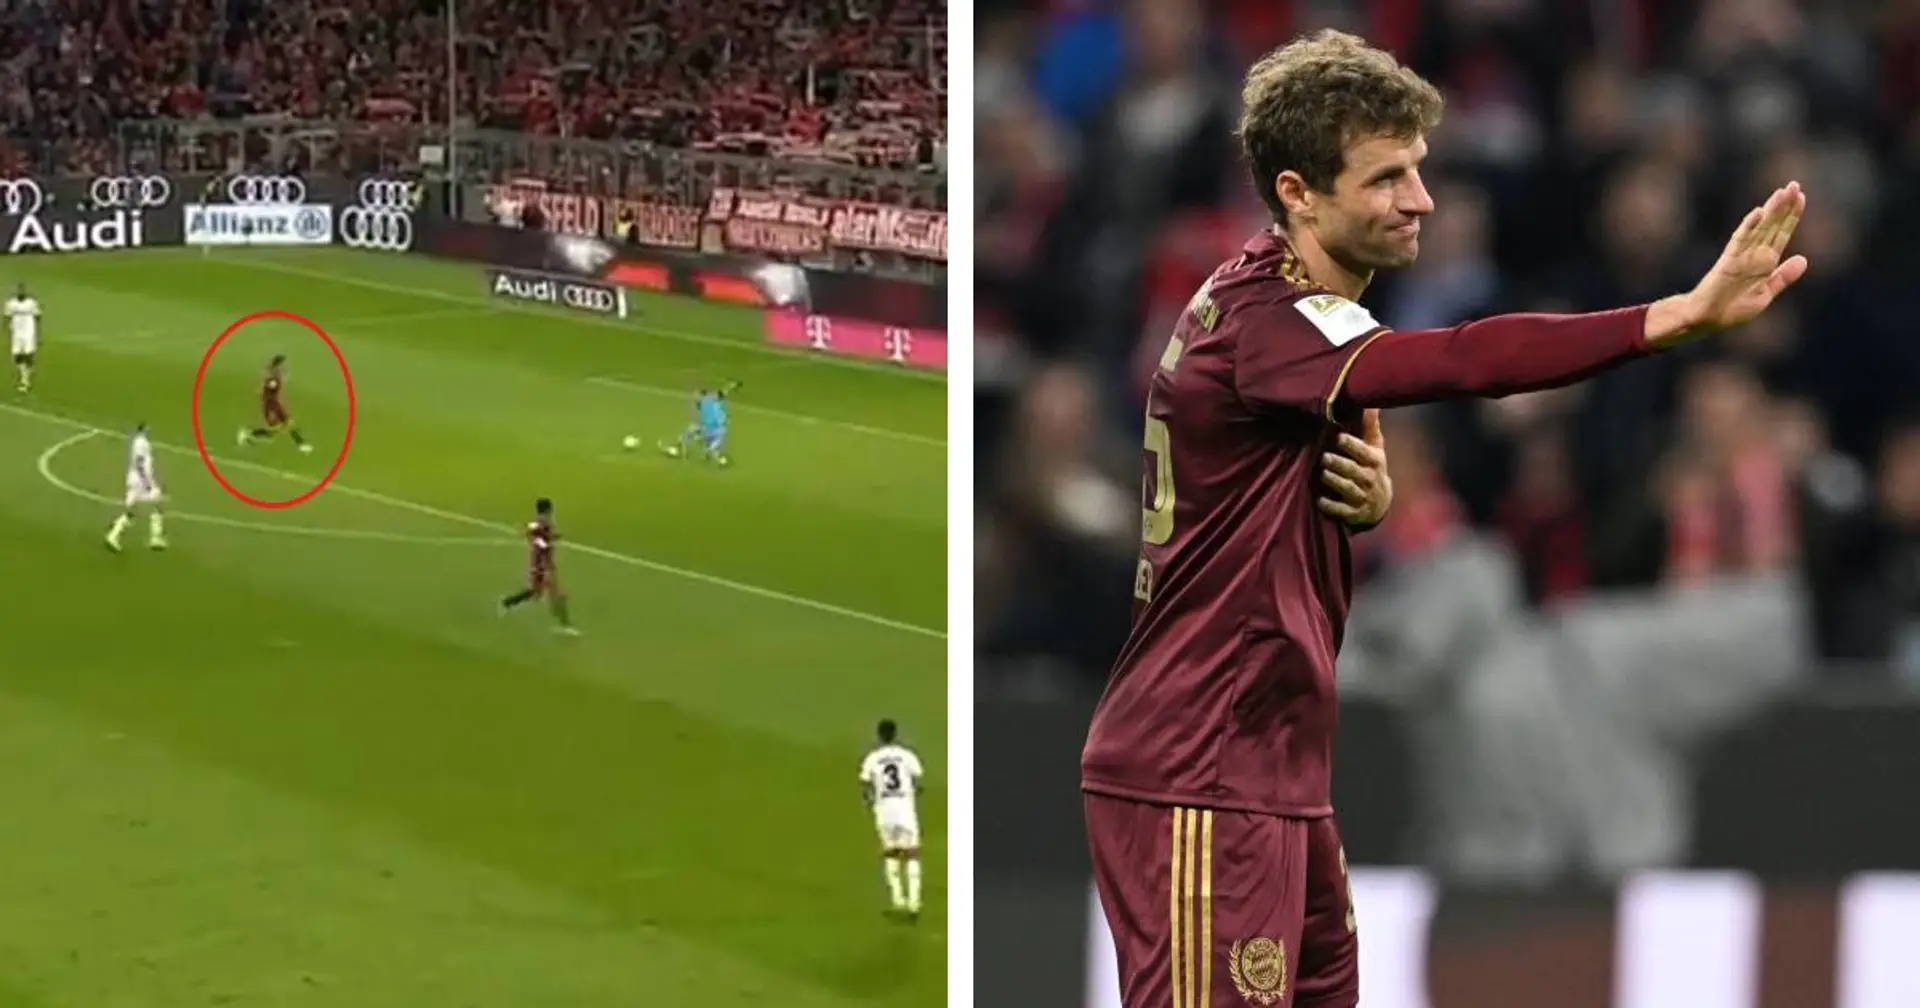 Beeindruckende Geste: Müller entschuldigt sich nach seinem Treffer beim Bayer-Torwart Hradecky